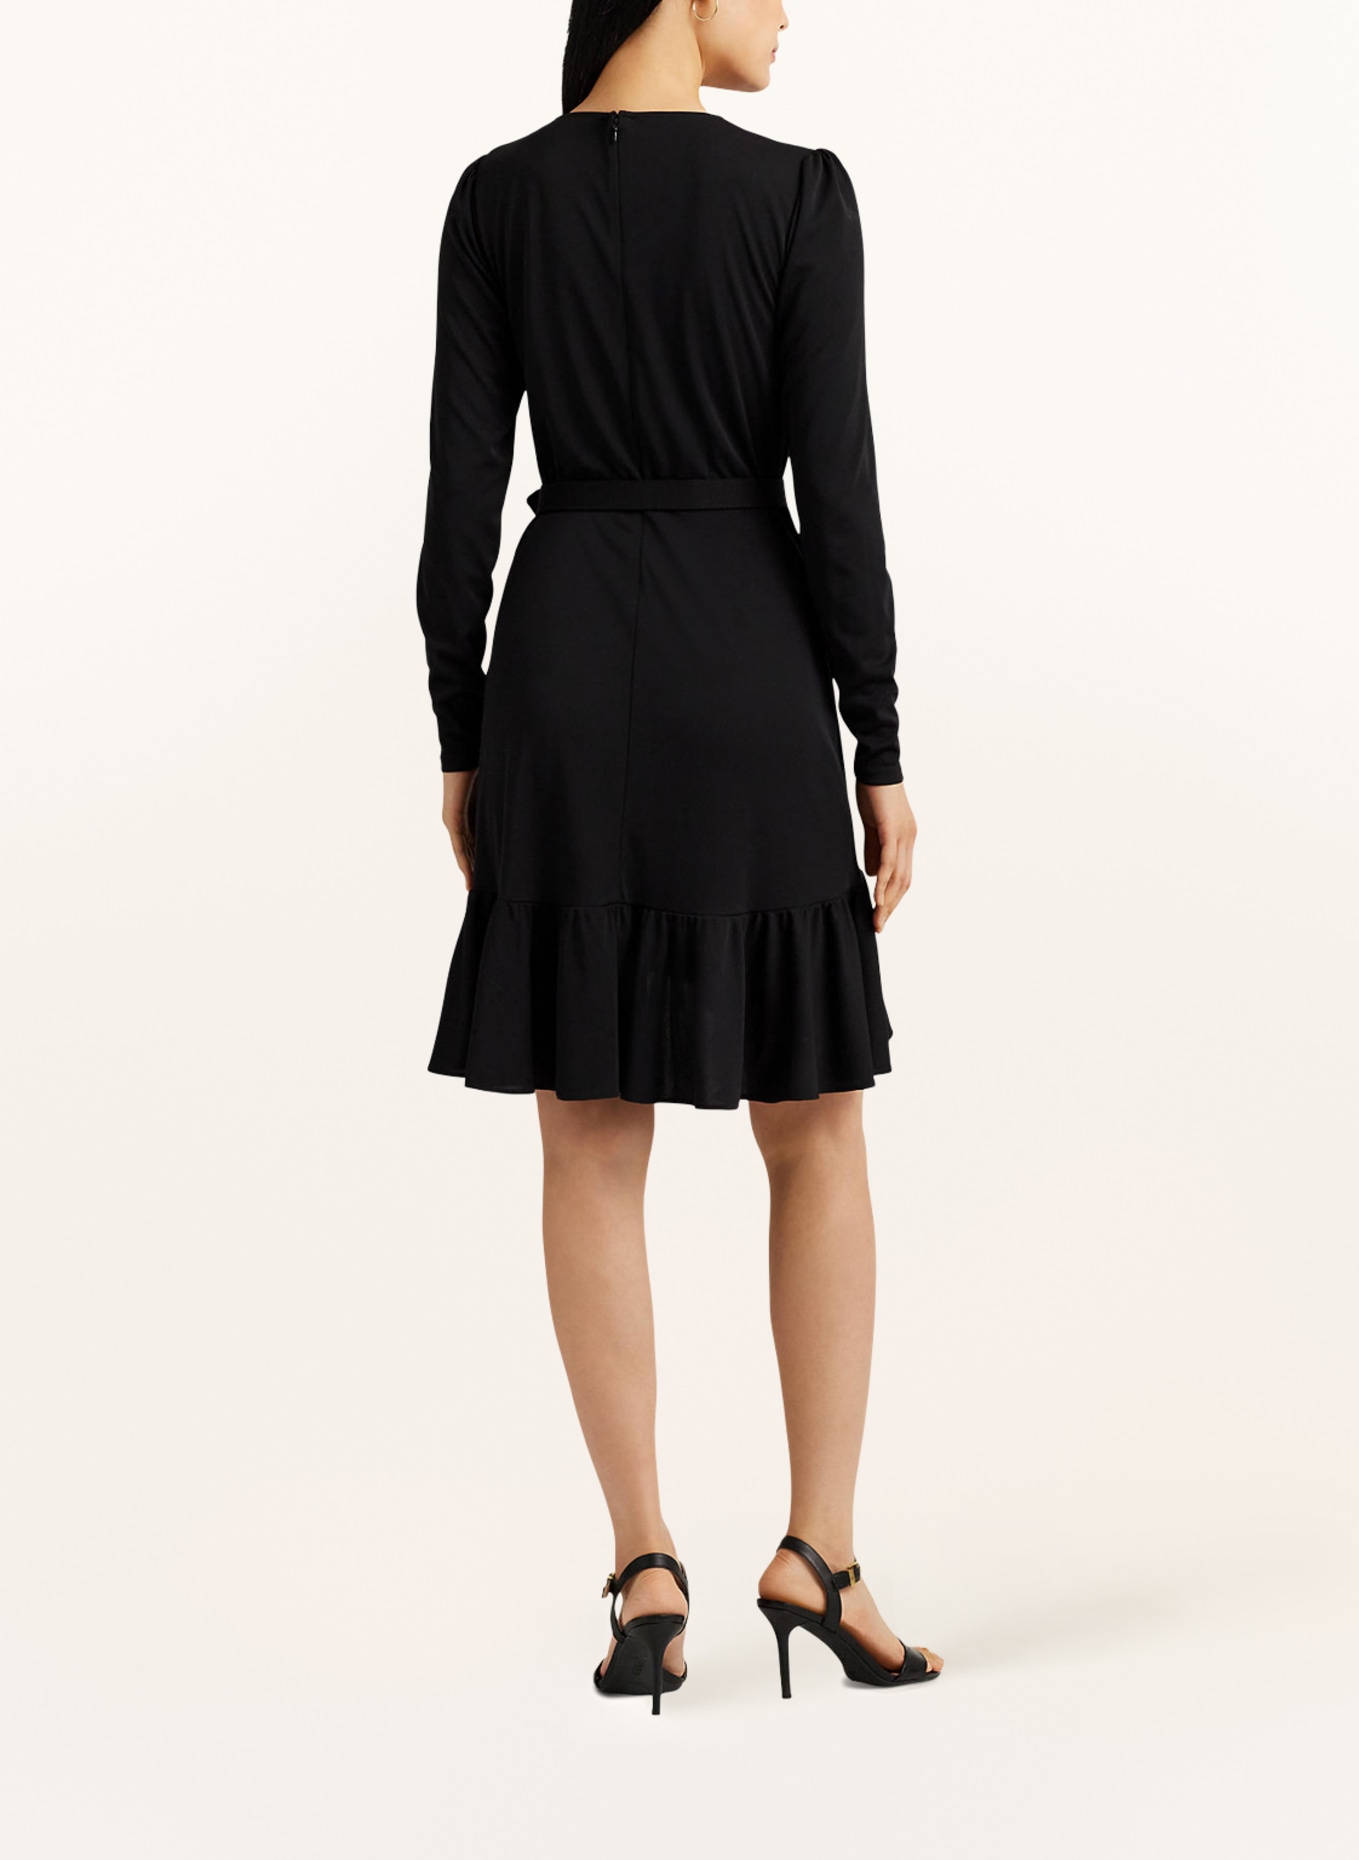 LAUREN RALPH LAUREN Jersey dress with ruffles, Color: BLACK (Image 3)